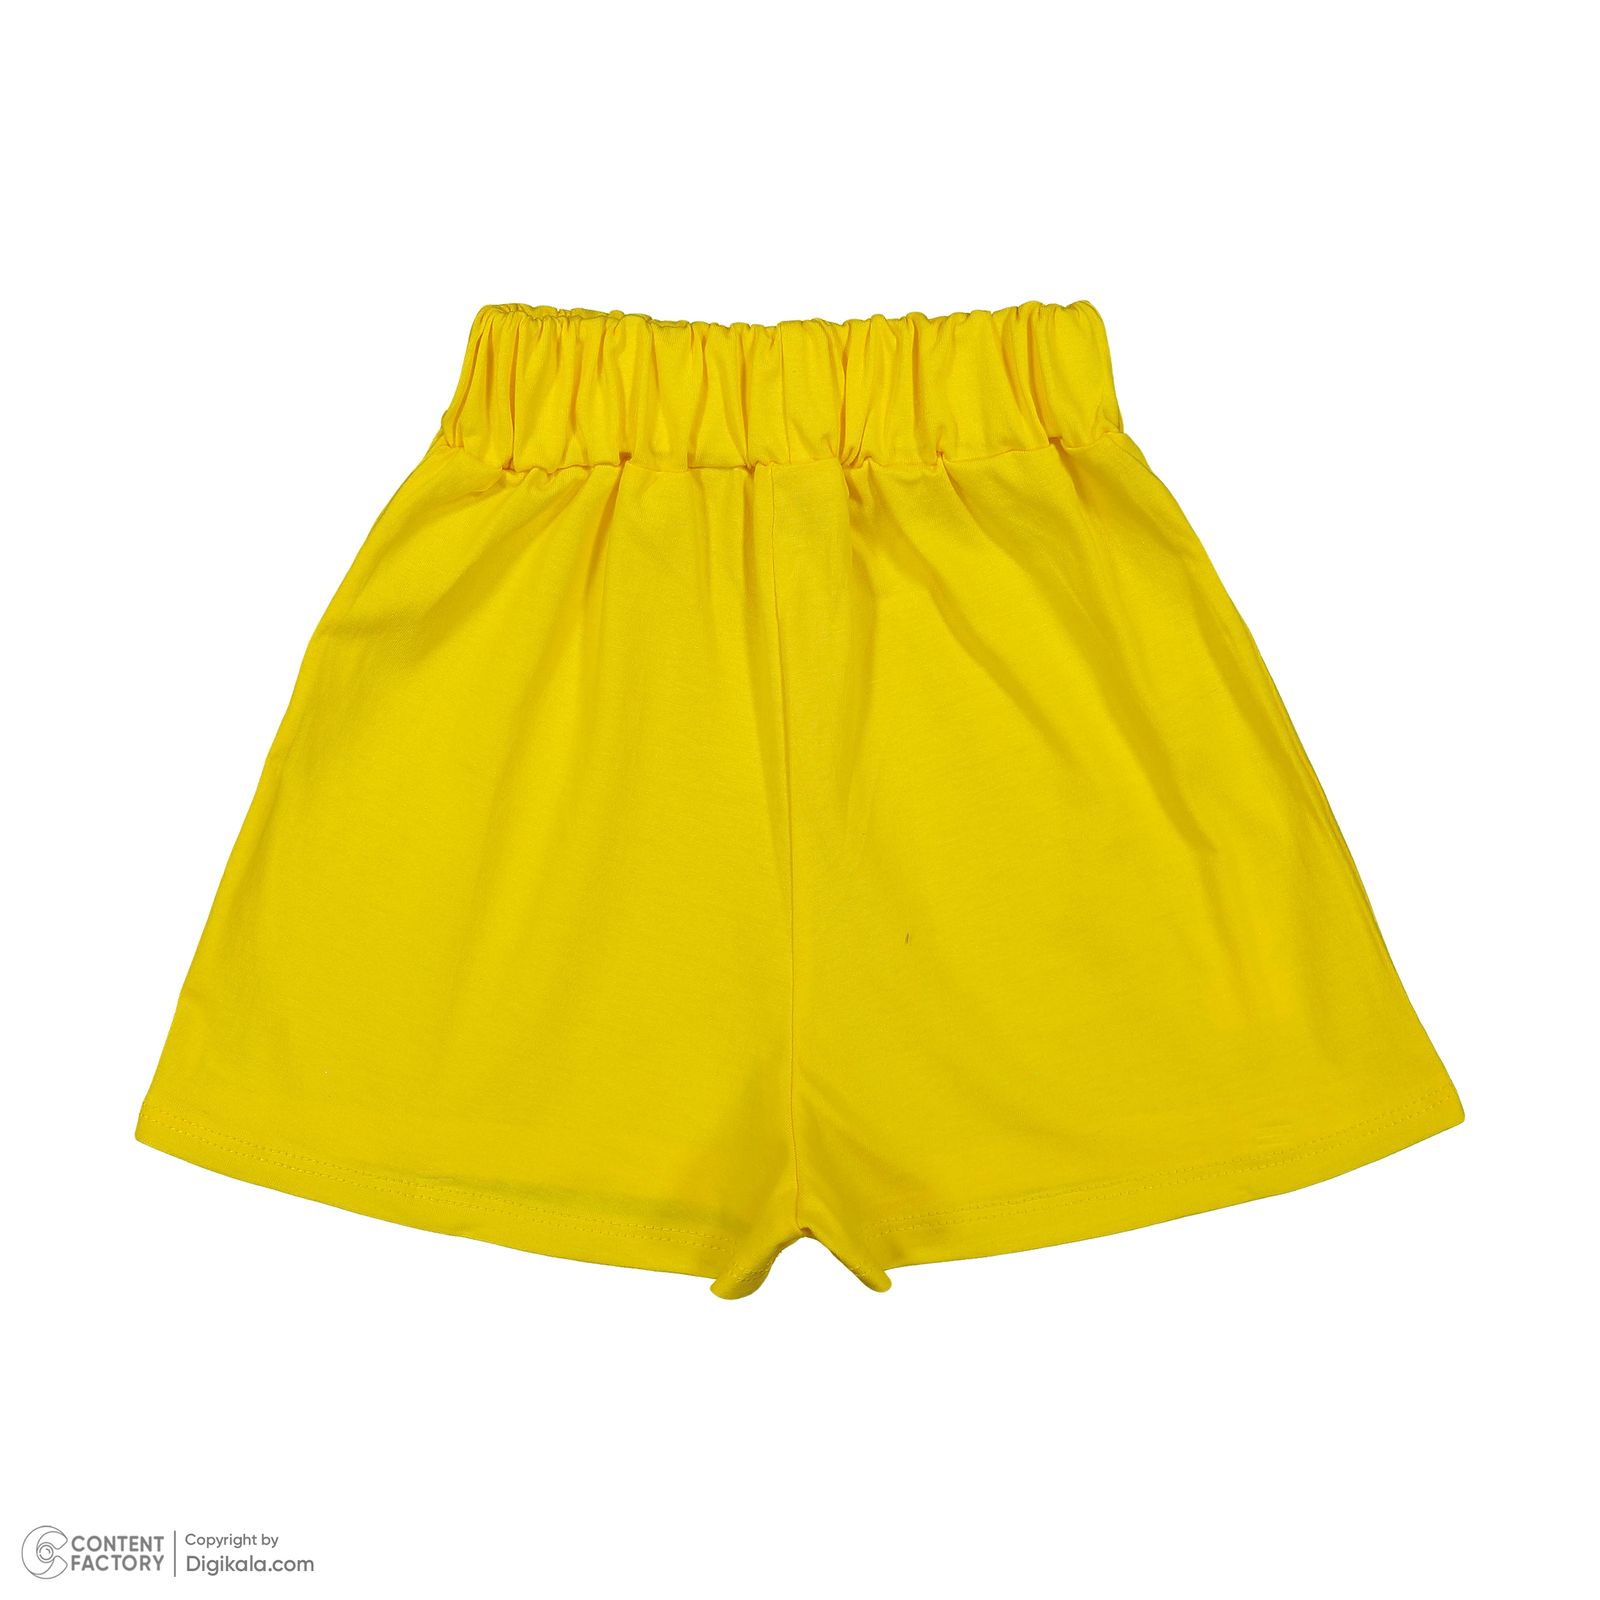 ست تی شرت آستین کوتاه و شلوارک دخترانه مادر مدل گاردن کد 92-16 رنگ زرد -  - 7